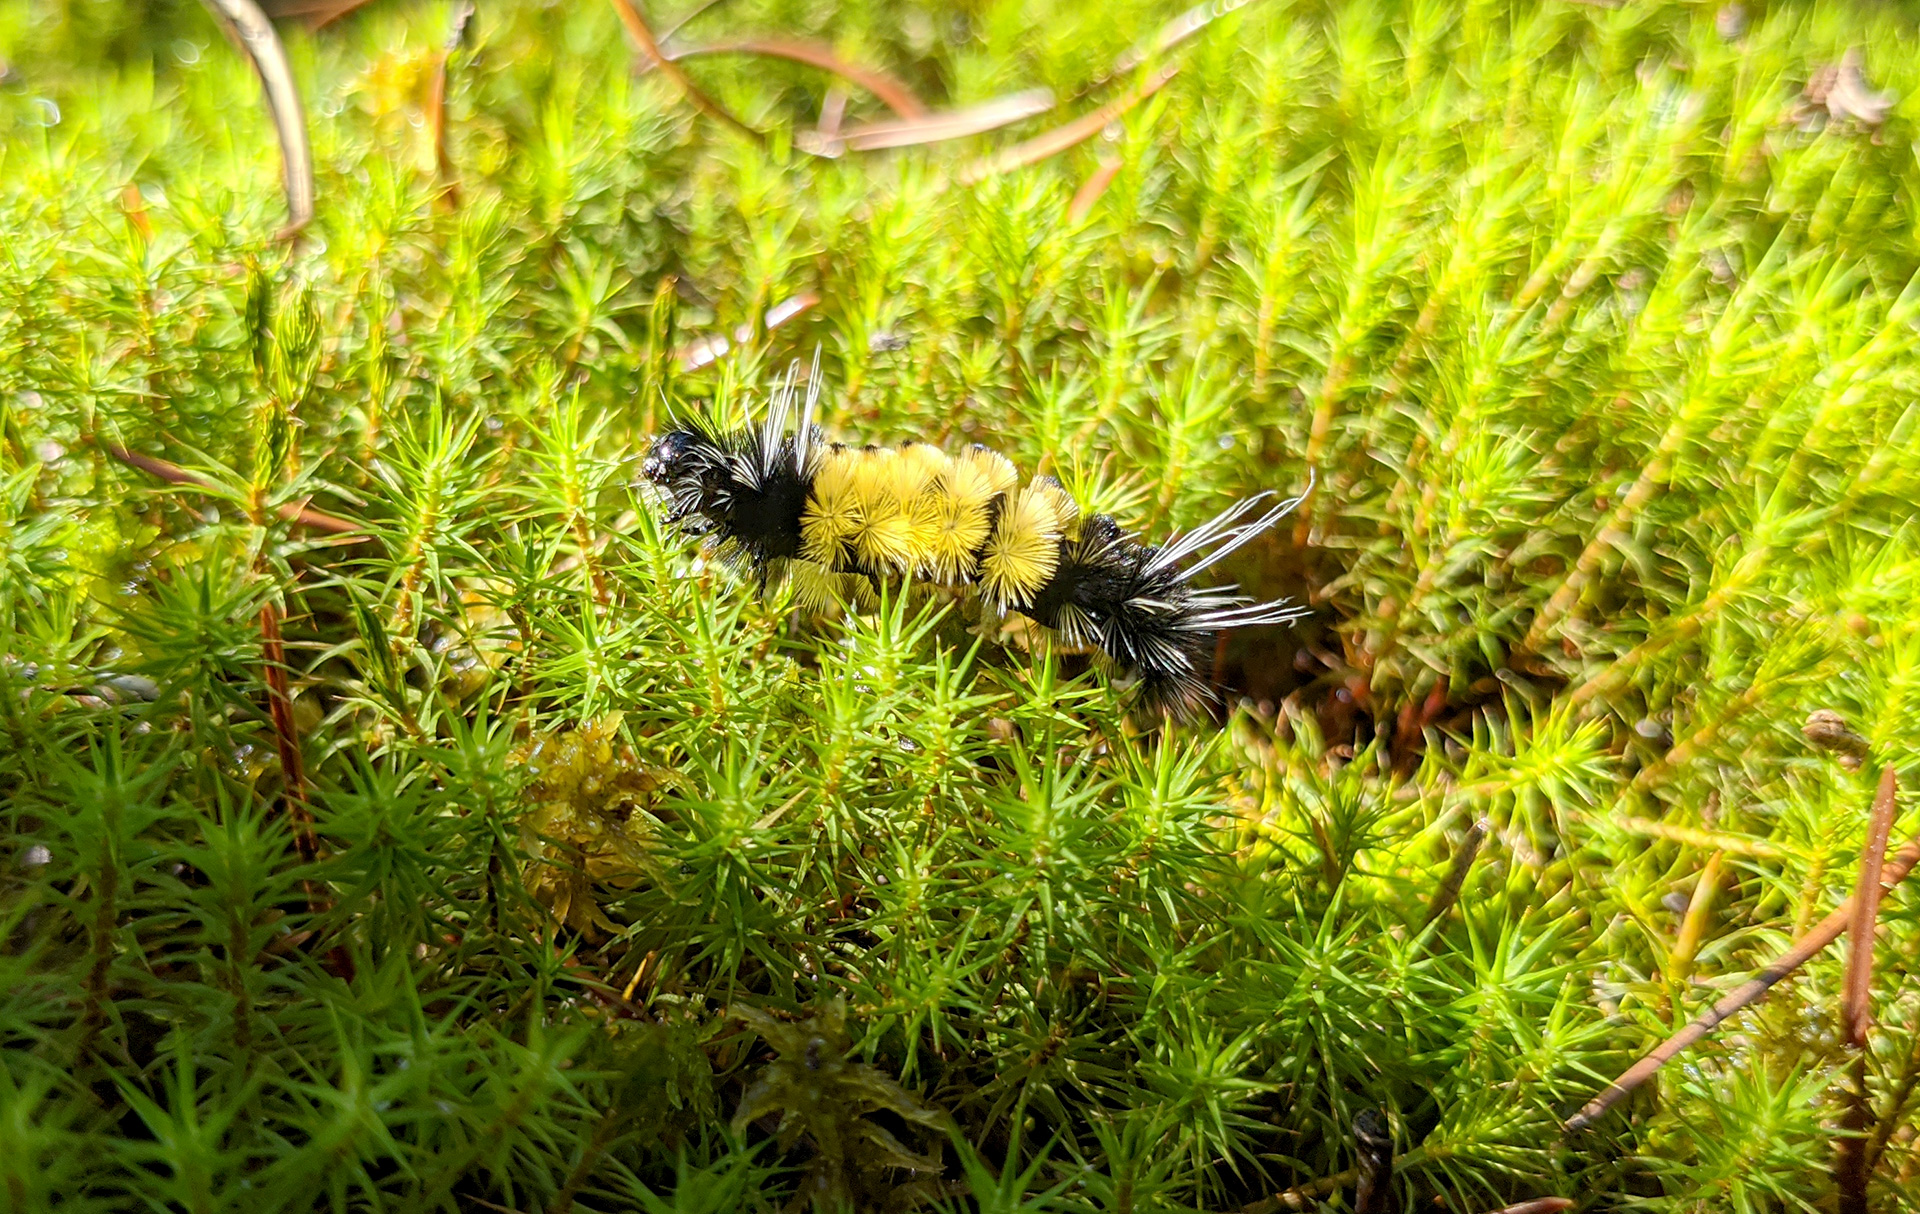 Peat caterpillar